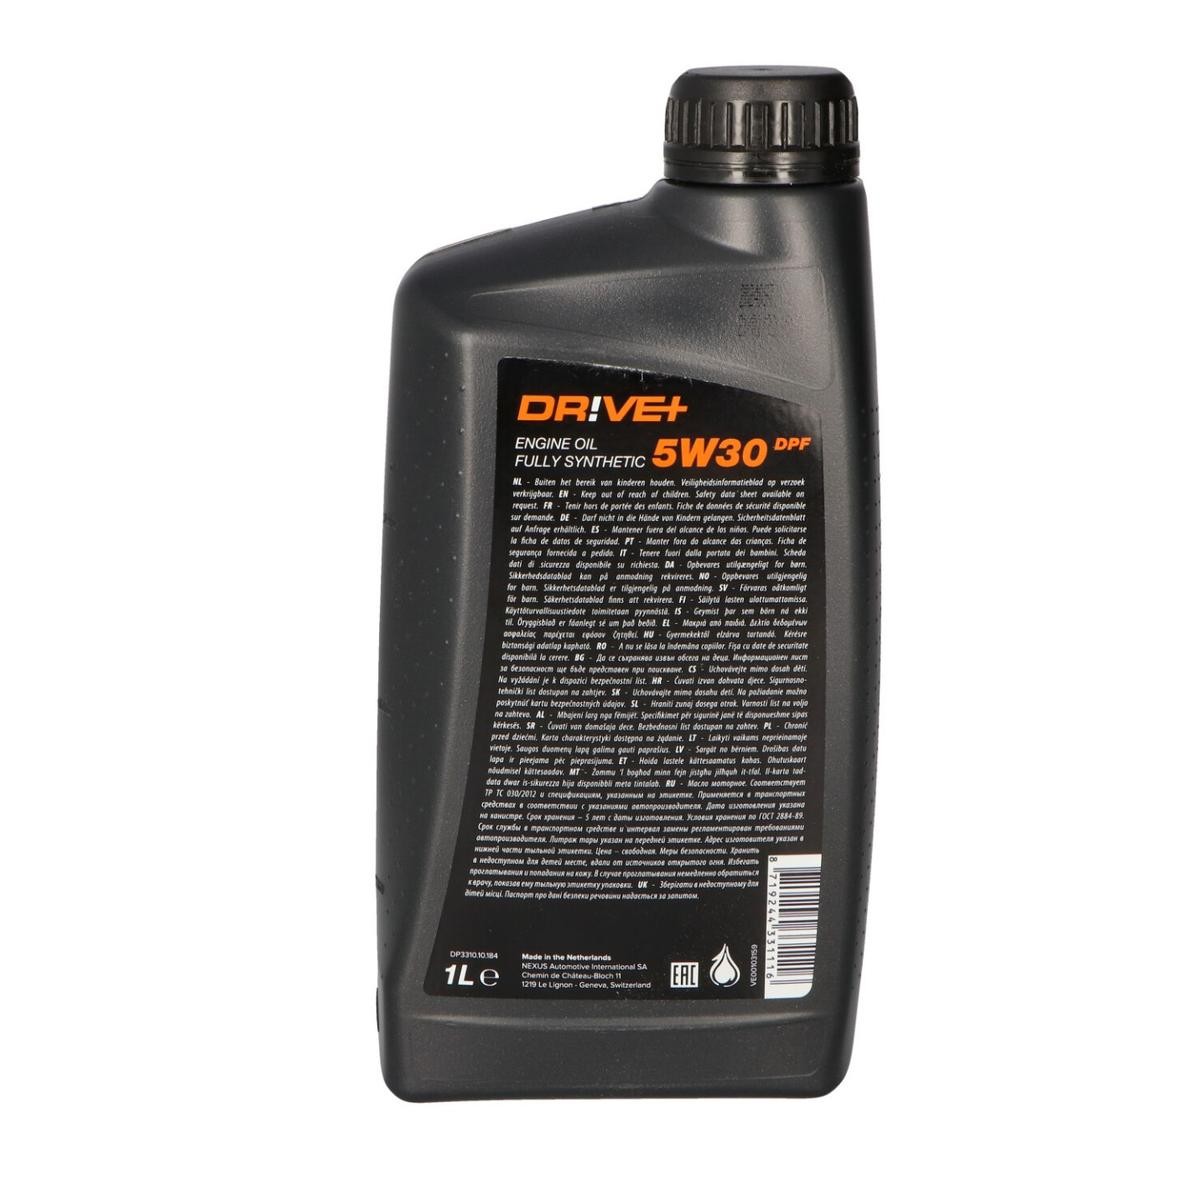 Dr!ve+ Engine oil DP3310.10.184